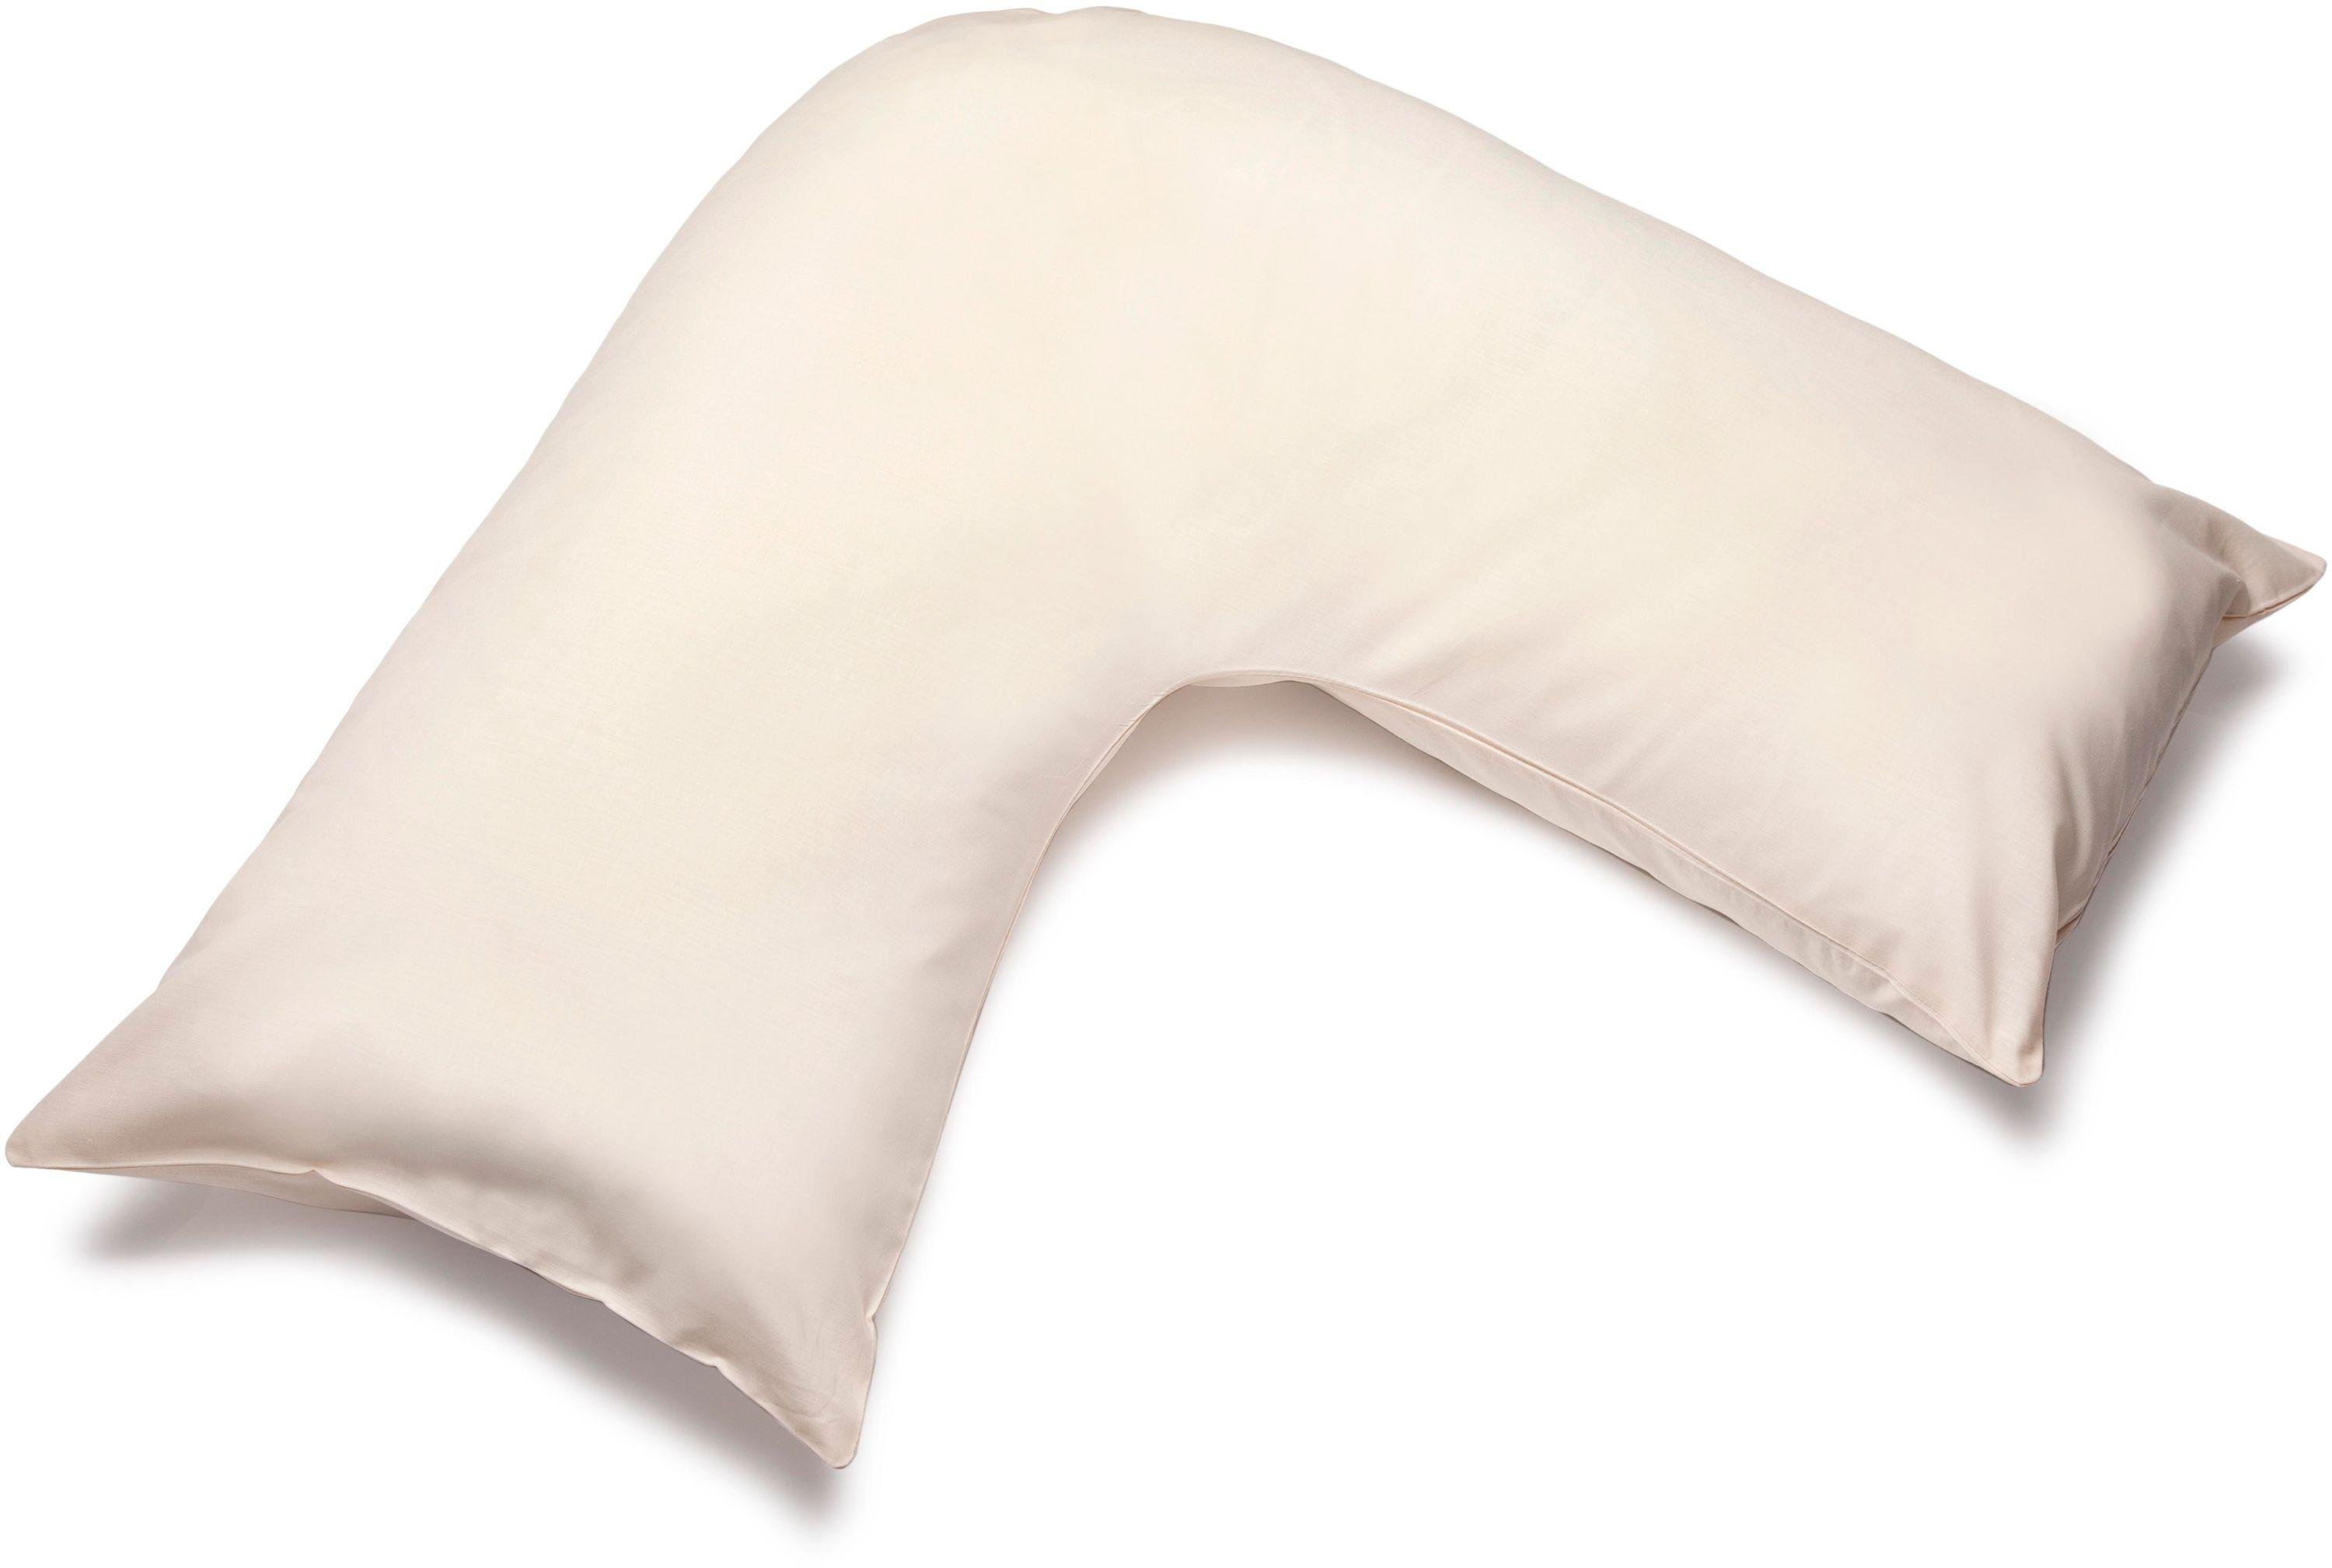 Belledorm V-shape Pillowcase - Cream.